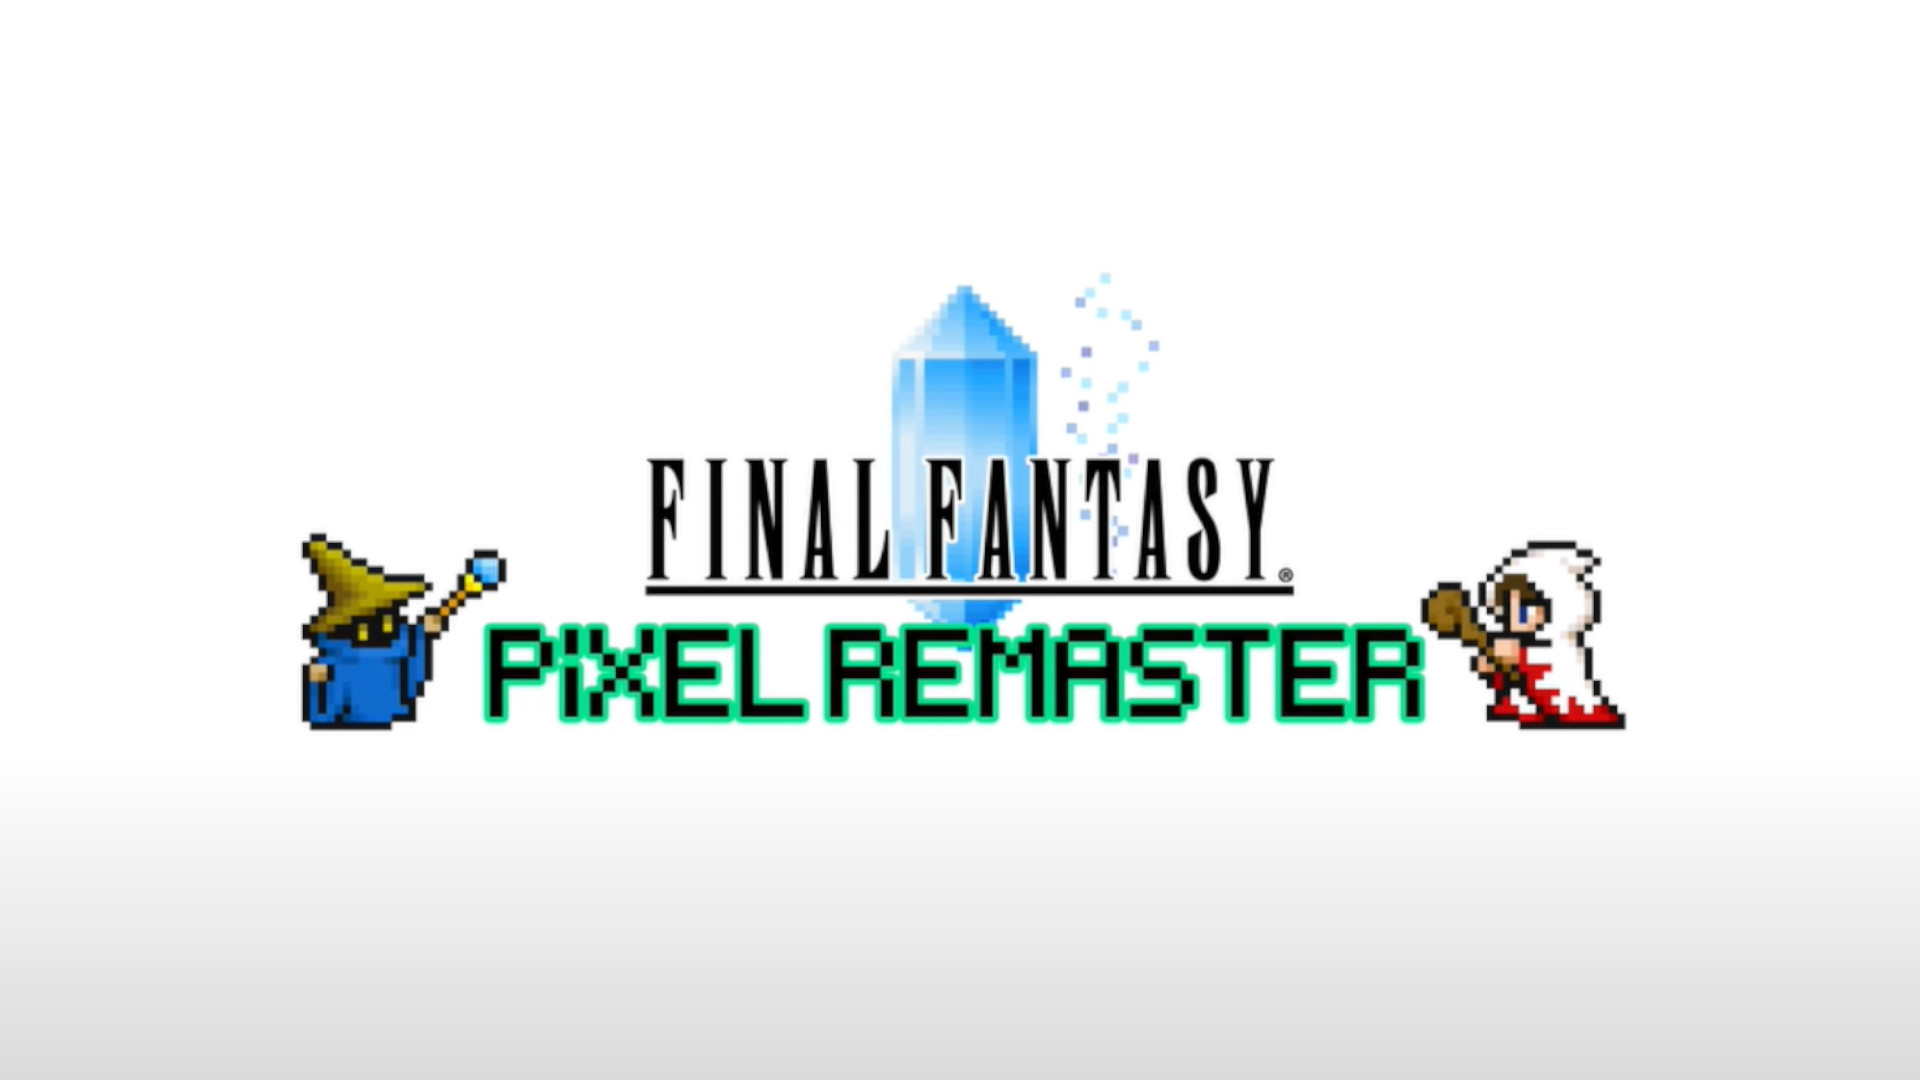 Final fantasy pixel remasterizado